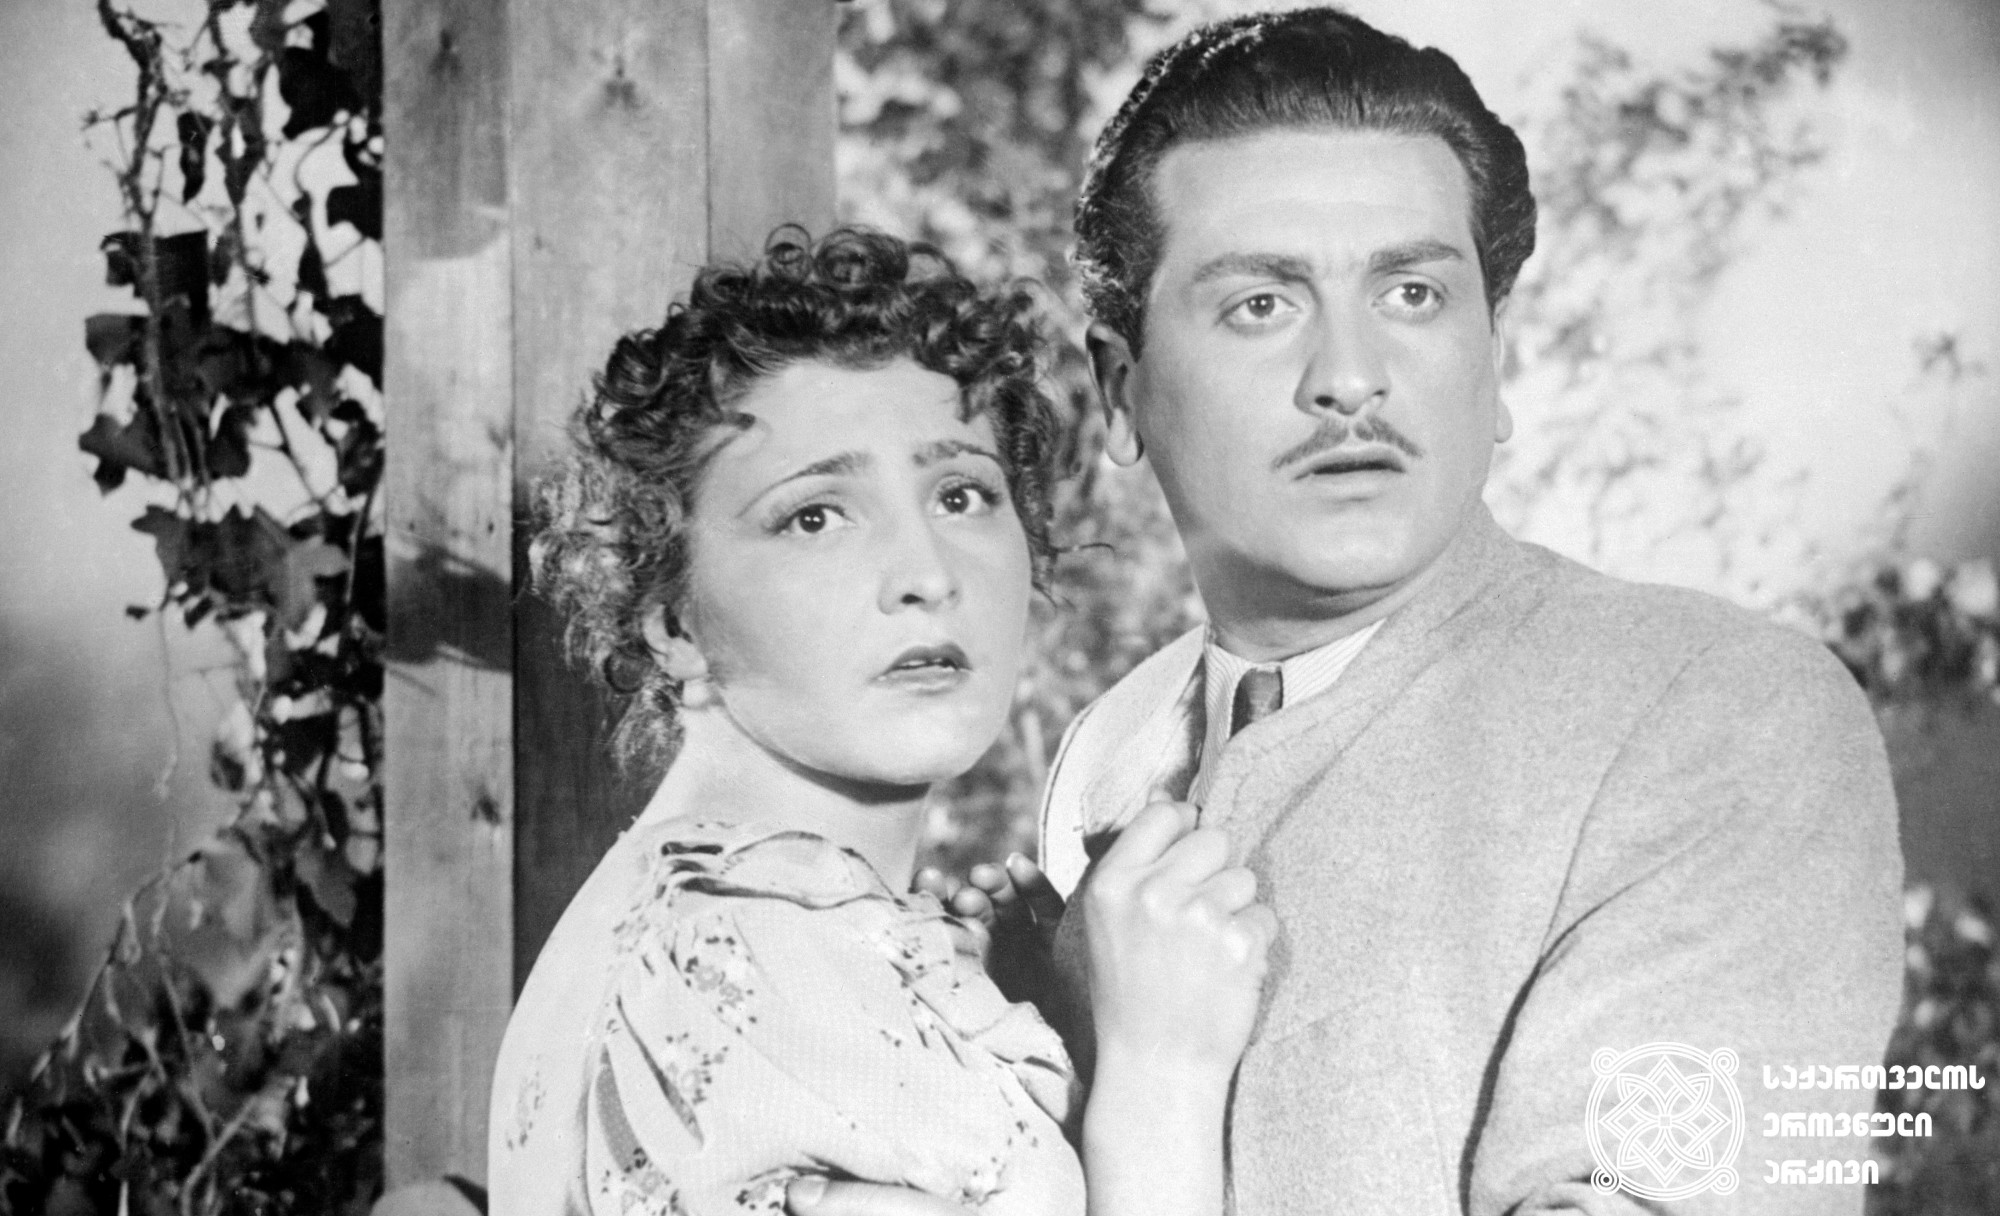 მხატვრული ფილმი „ჭრიჭინა“, შოთა - რამაზ ჩხიკვაძე, ჭრიჭინა - ლეილა აბაშიძე. <br> 
ფოტო: გიორგი ლიახოვი. <br>
1954 წელი.  <br>
Scene from the film The Chrichina. Ramaz Chkhikvadze as Shota, Leila Abashidze as Chrichina. <br>
Photo by Giorgi Liakhov.  <br>
1954.